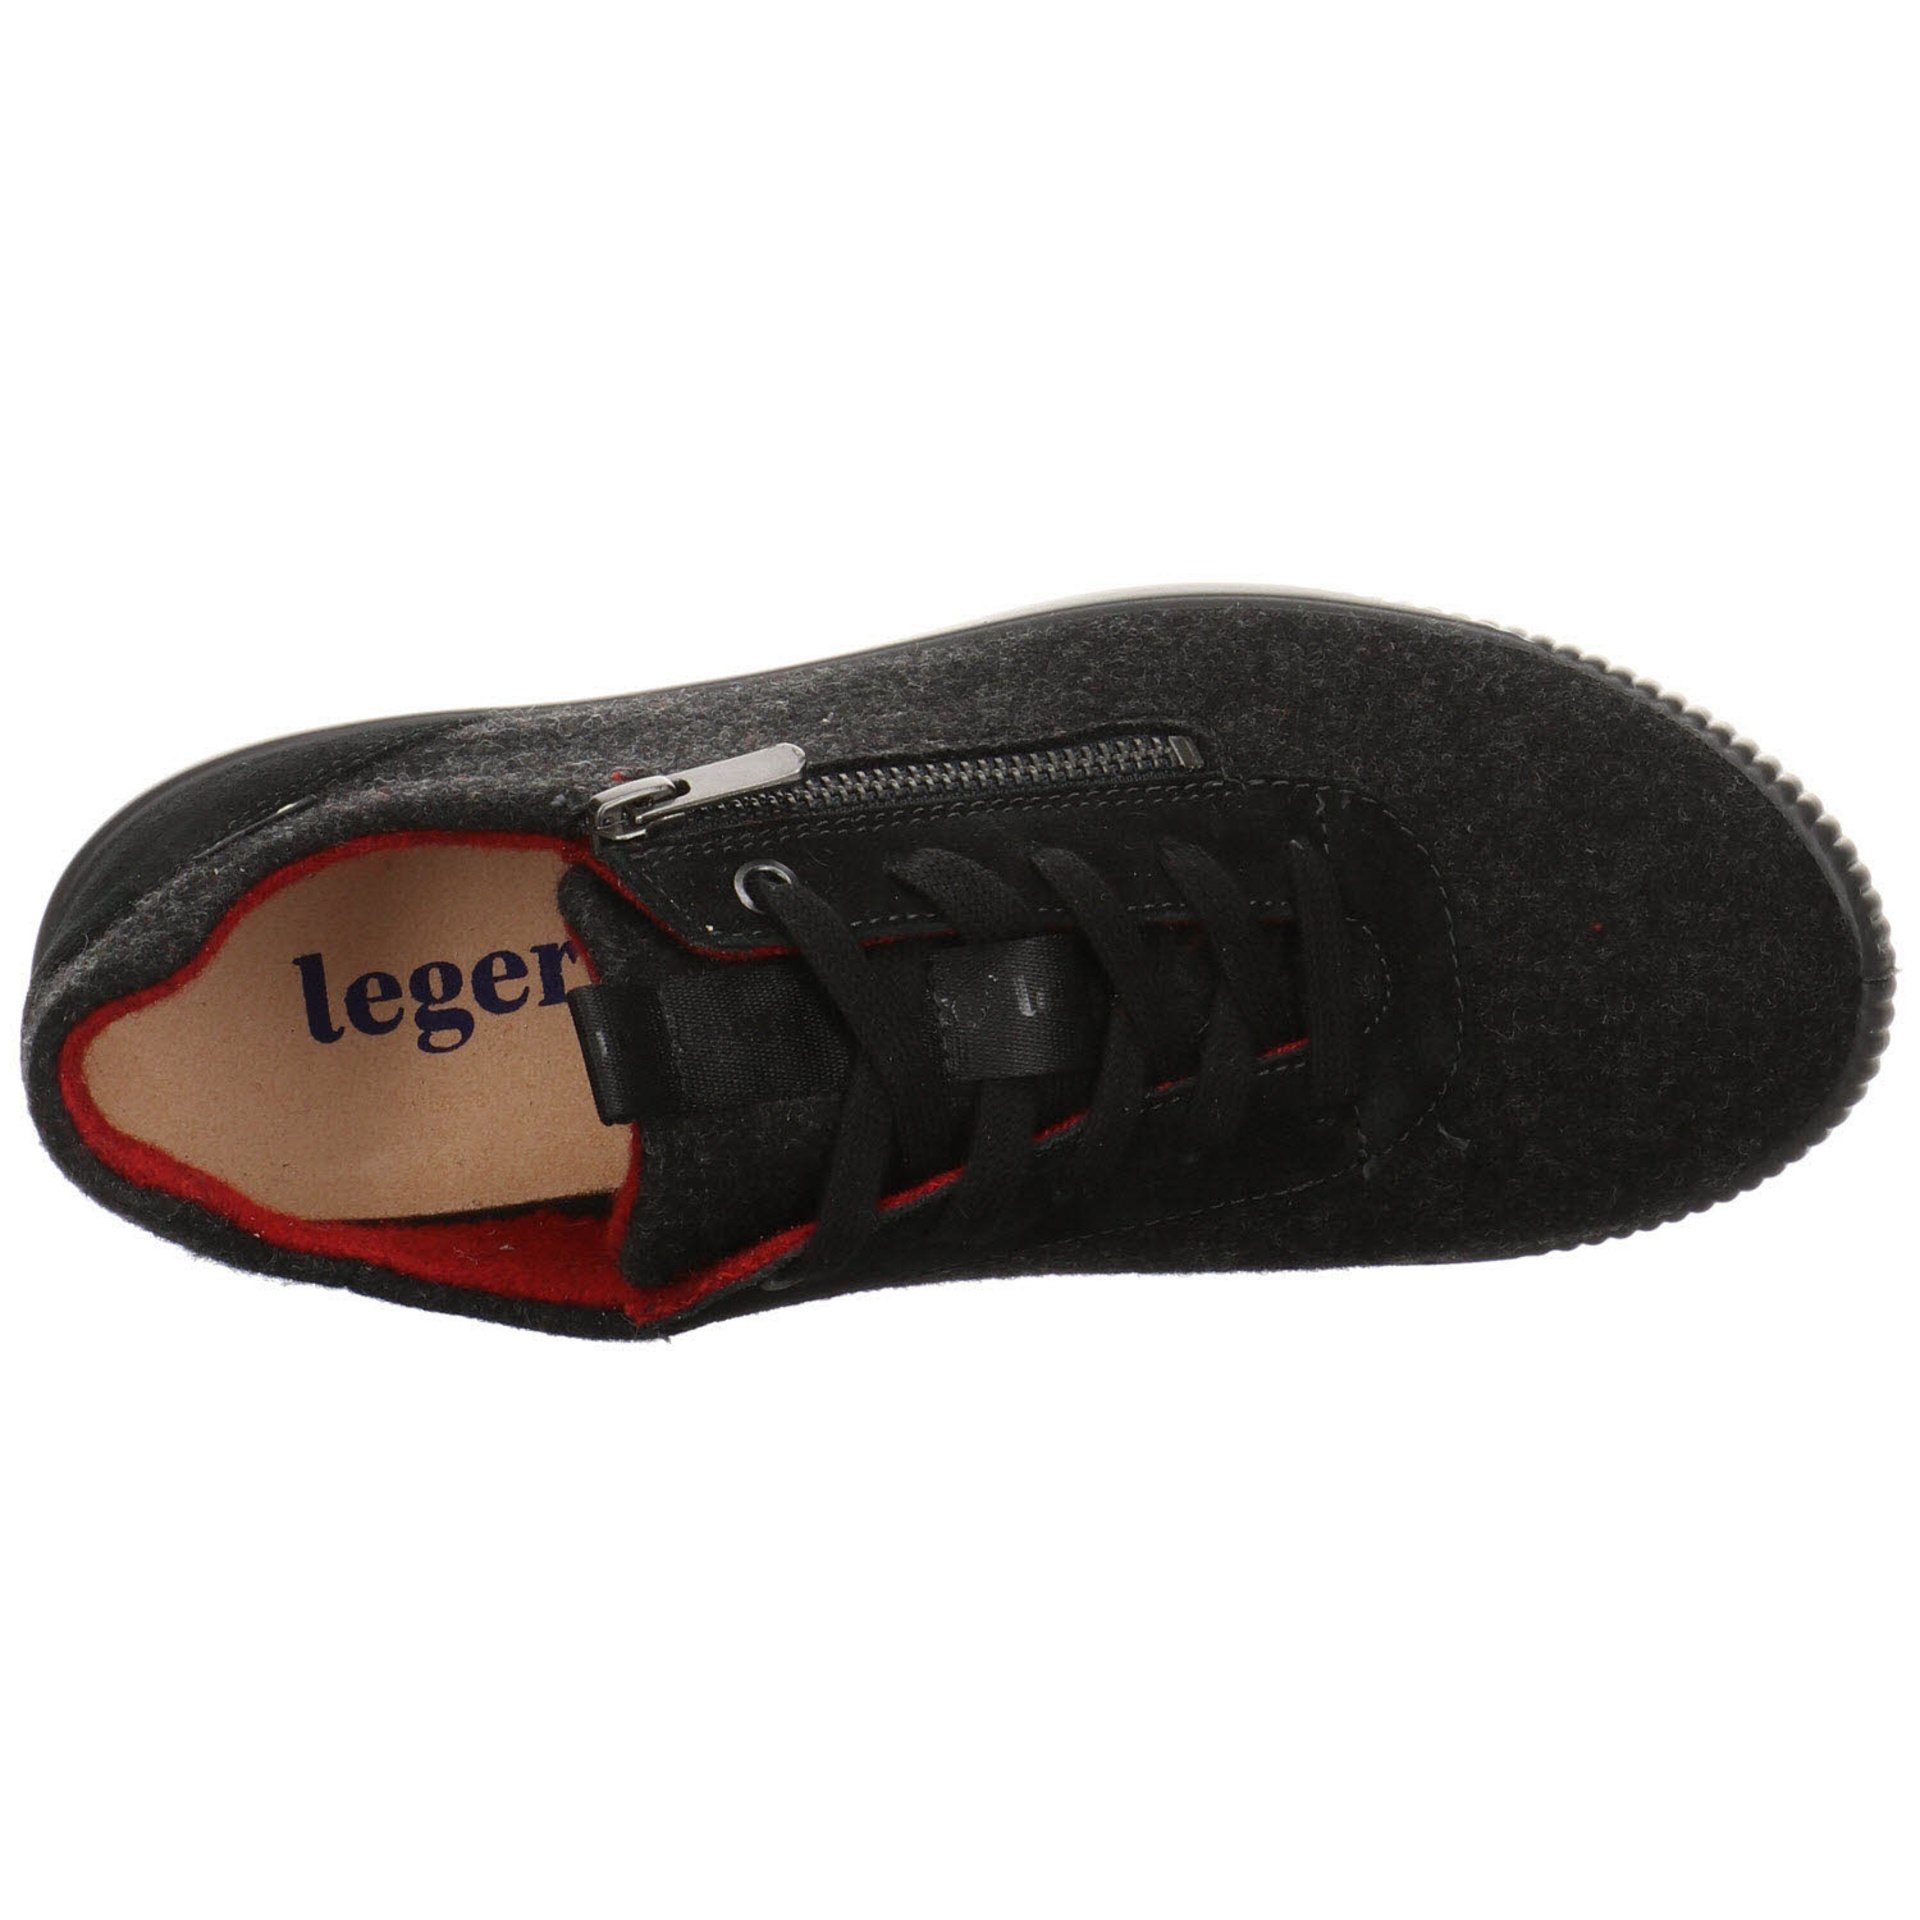 Legero Damen Goretex Sneaker Schuhe schwarz Tanaro dunkel Schnürschuh 4.0 Leder-/Textilkombination Sneaker